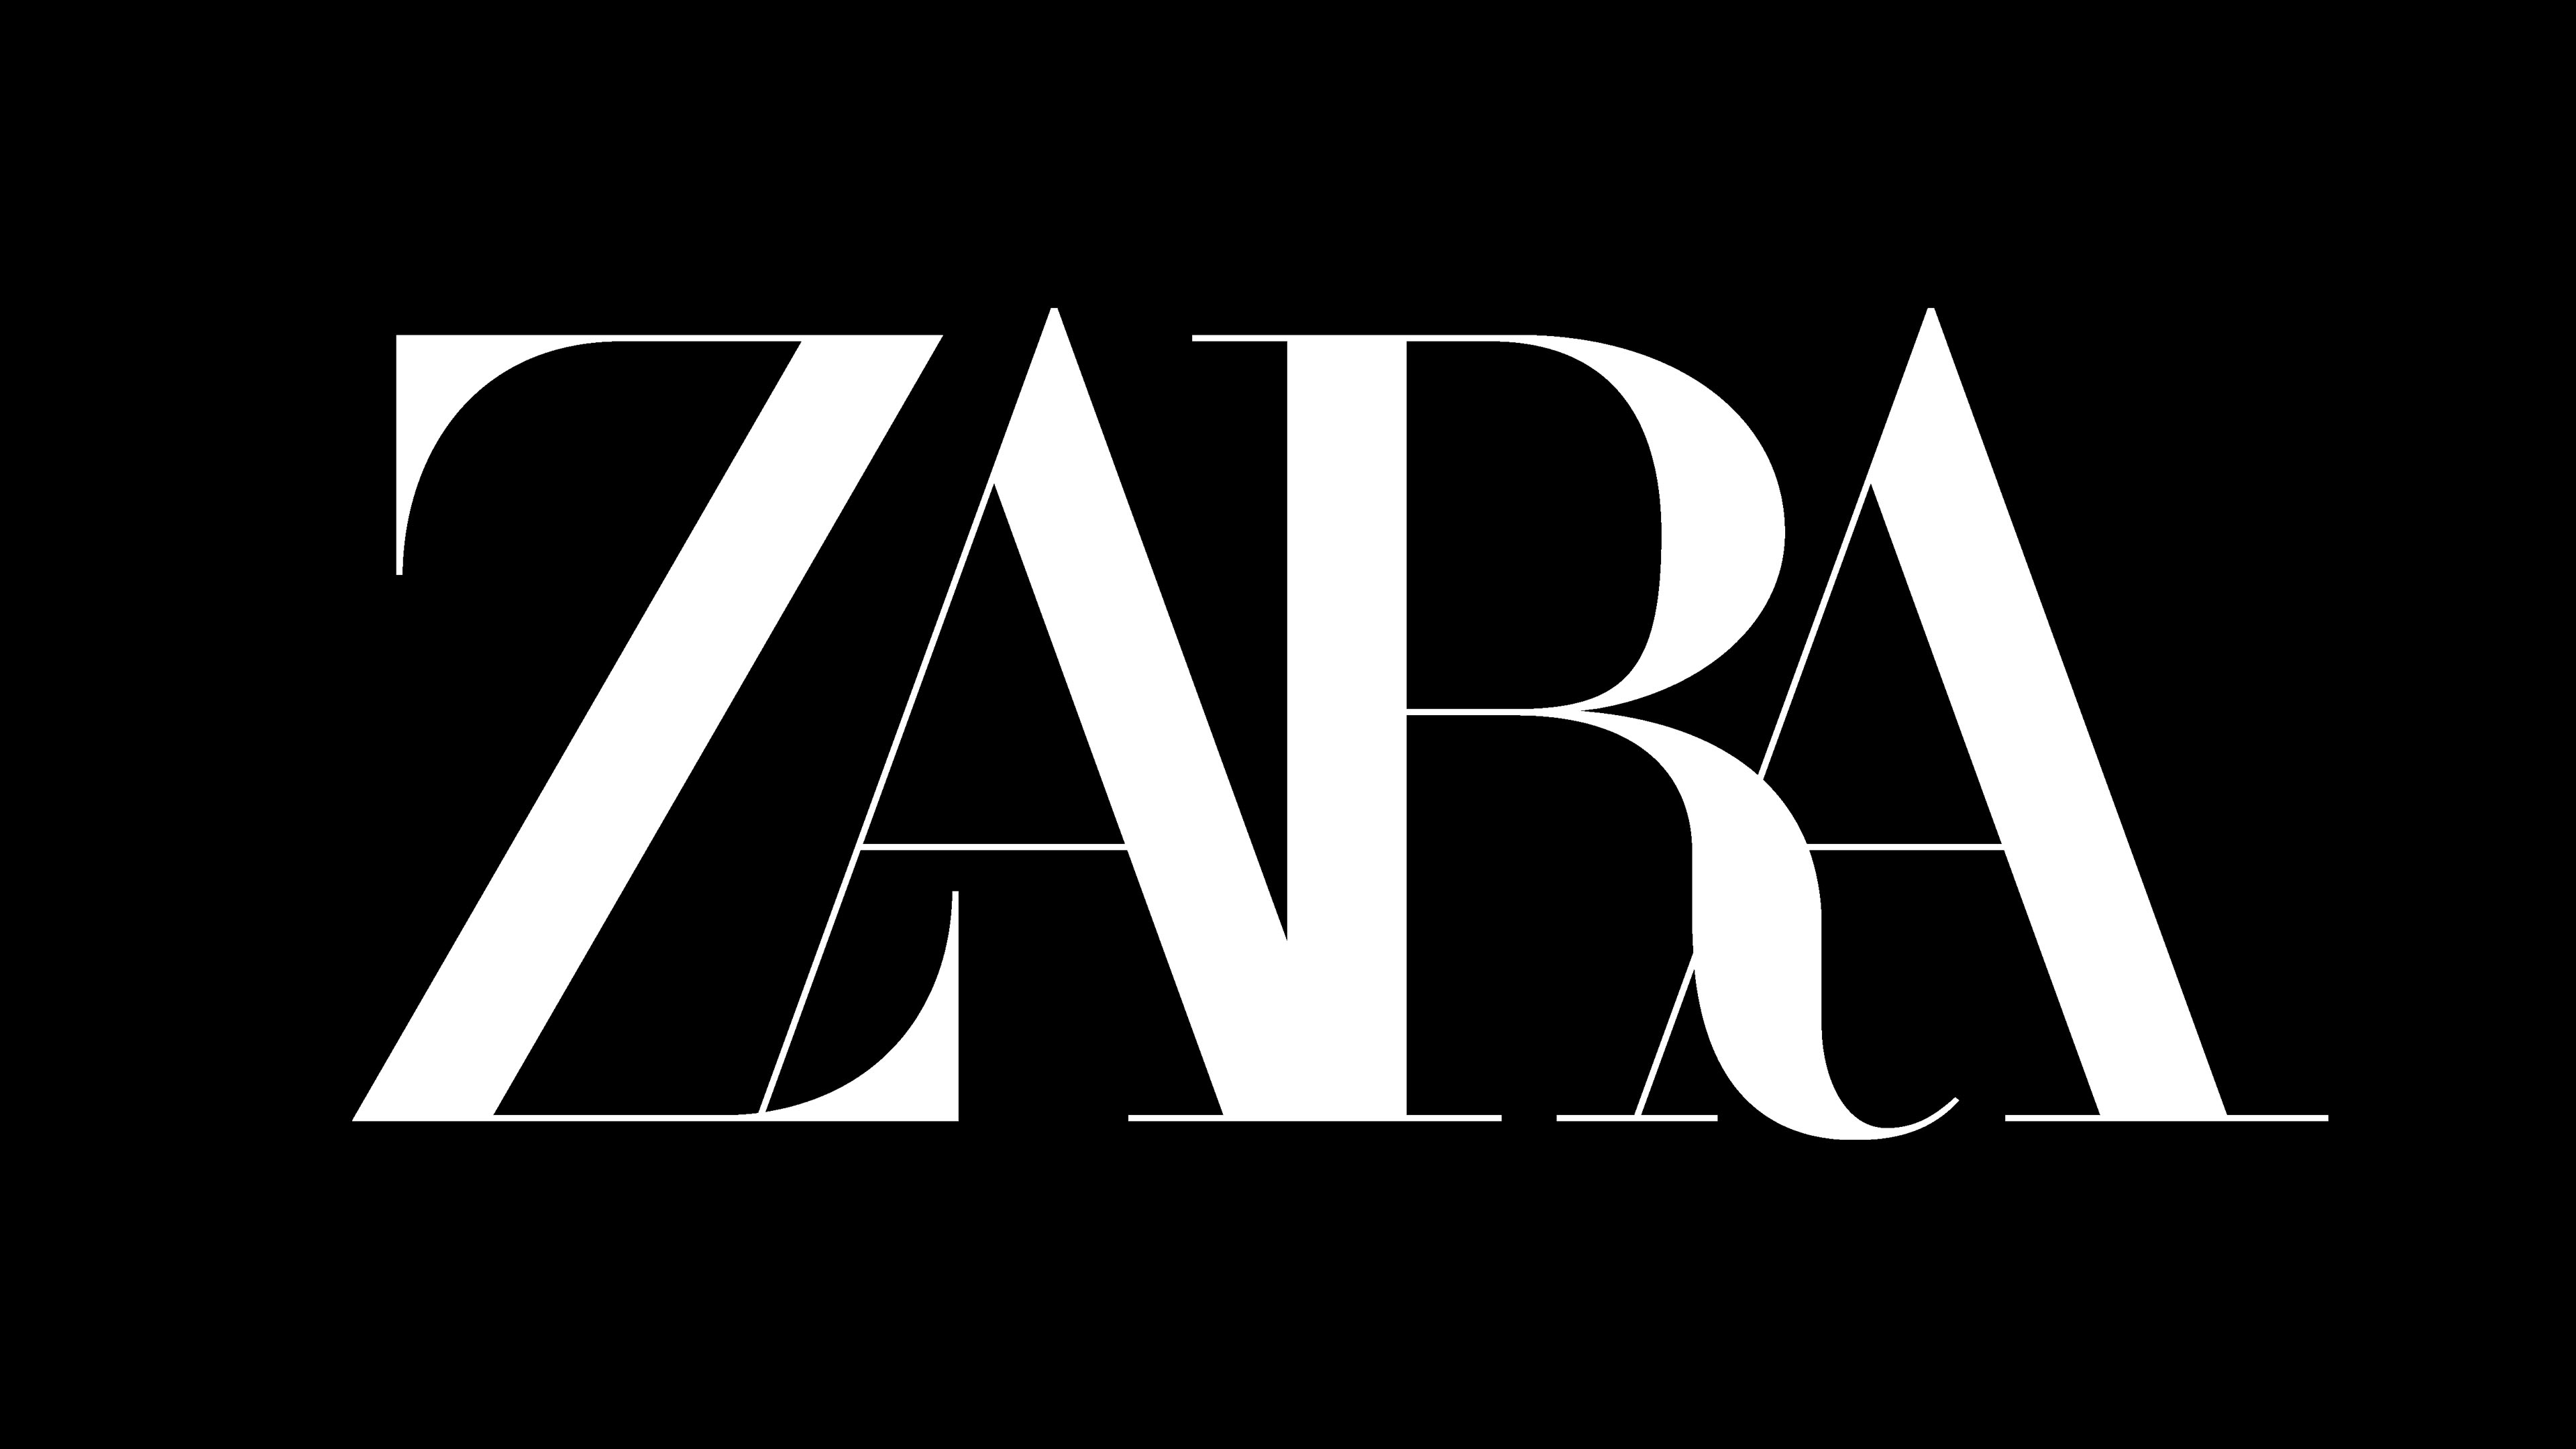 Logos De Zara : nuevo logo de Zara no ha gustado en las redes sociales ...